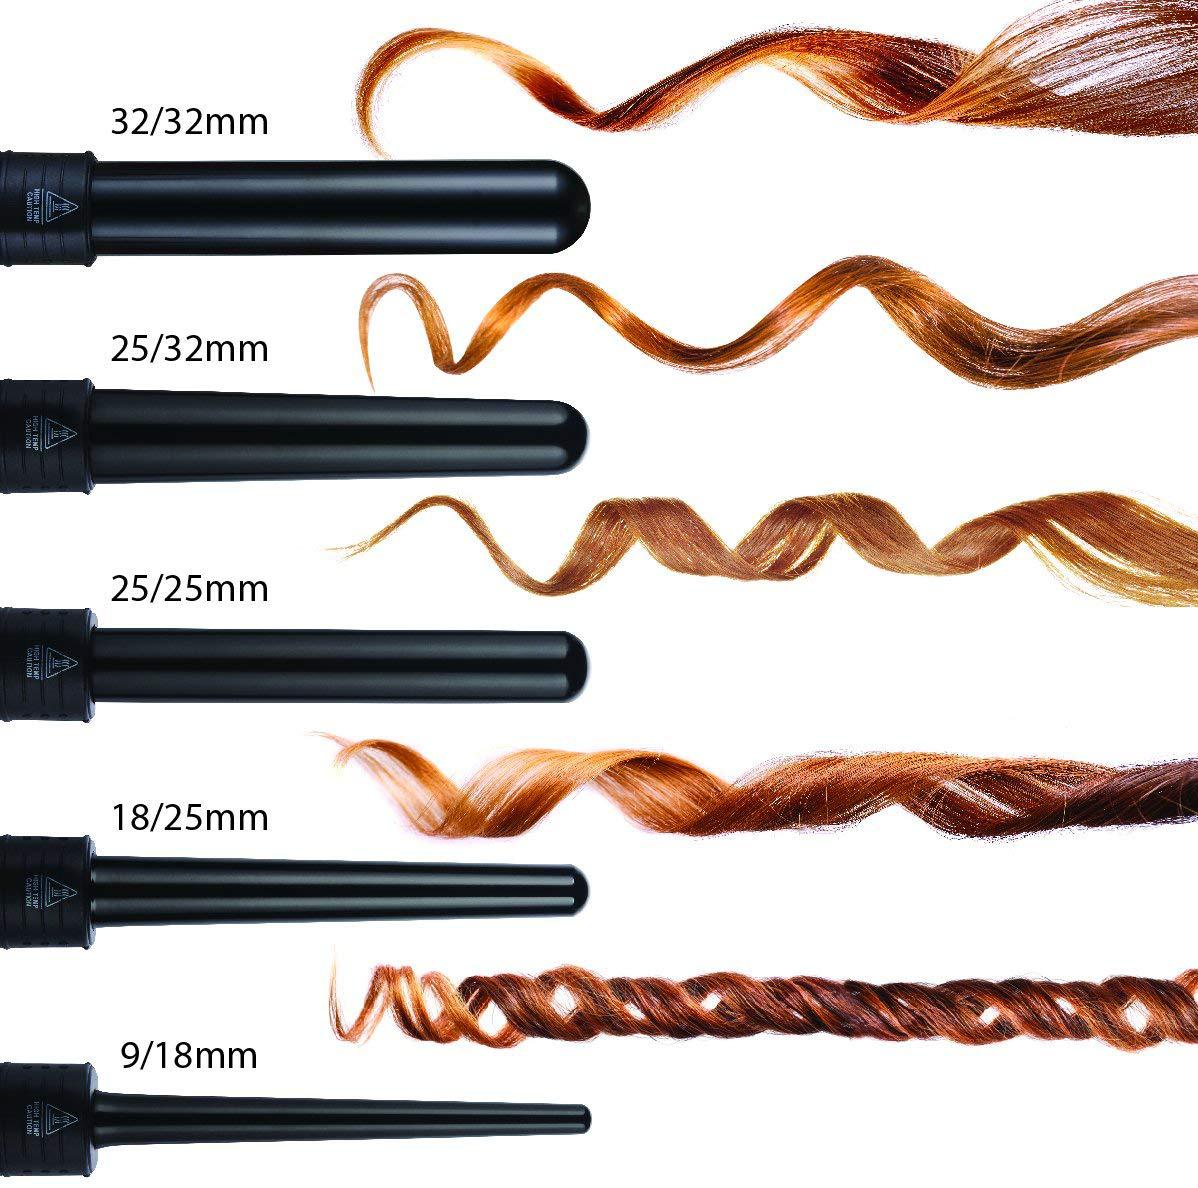 5p Ceramic Hair Curler Hair Care Straight Hair Pull Straight Clip Electric Hair Hair Curler